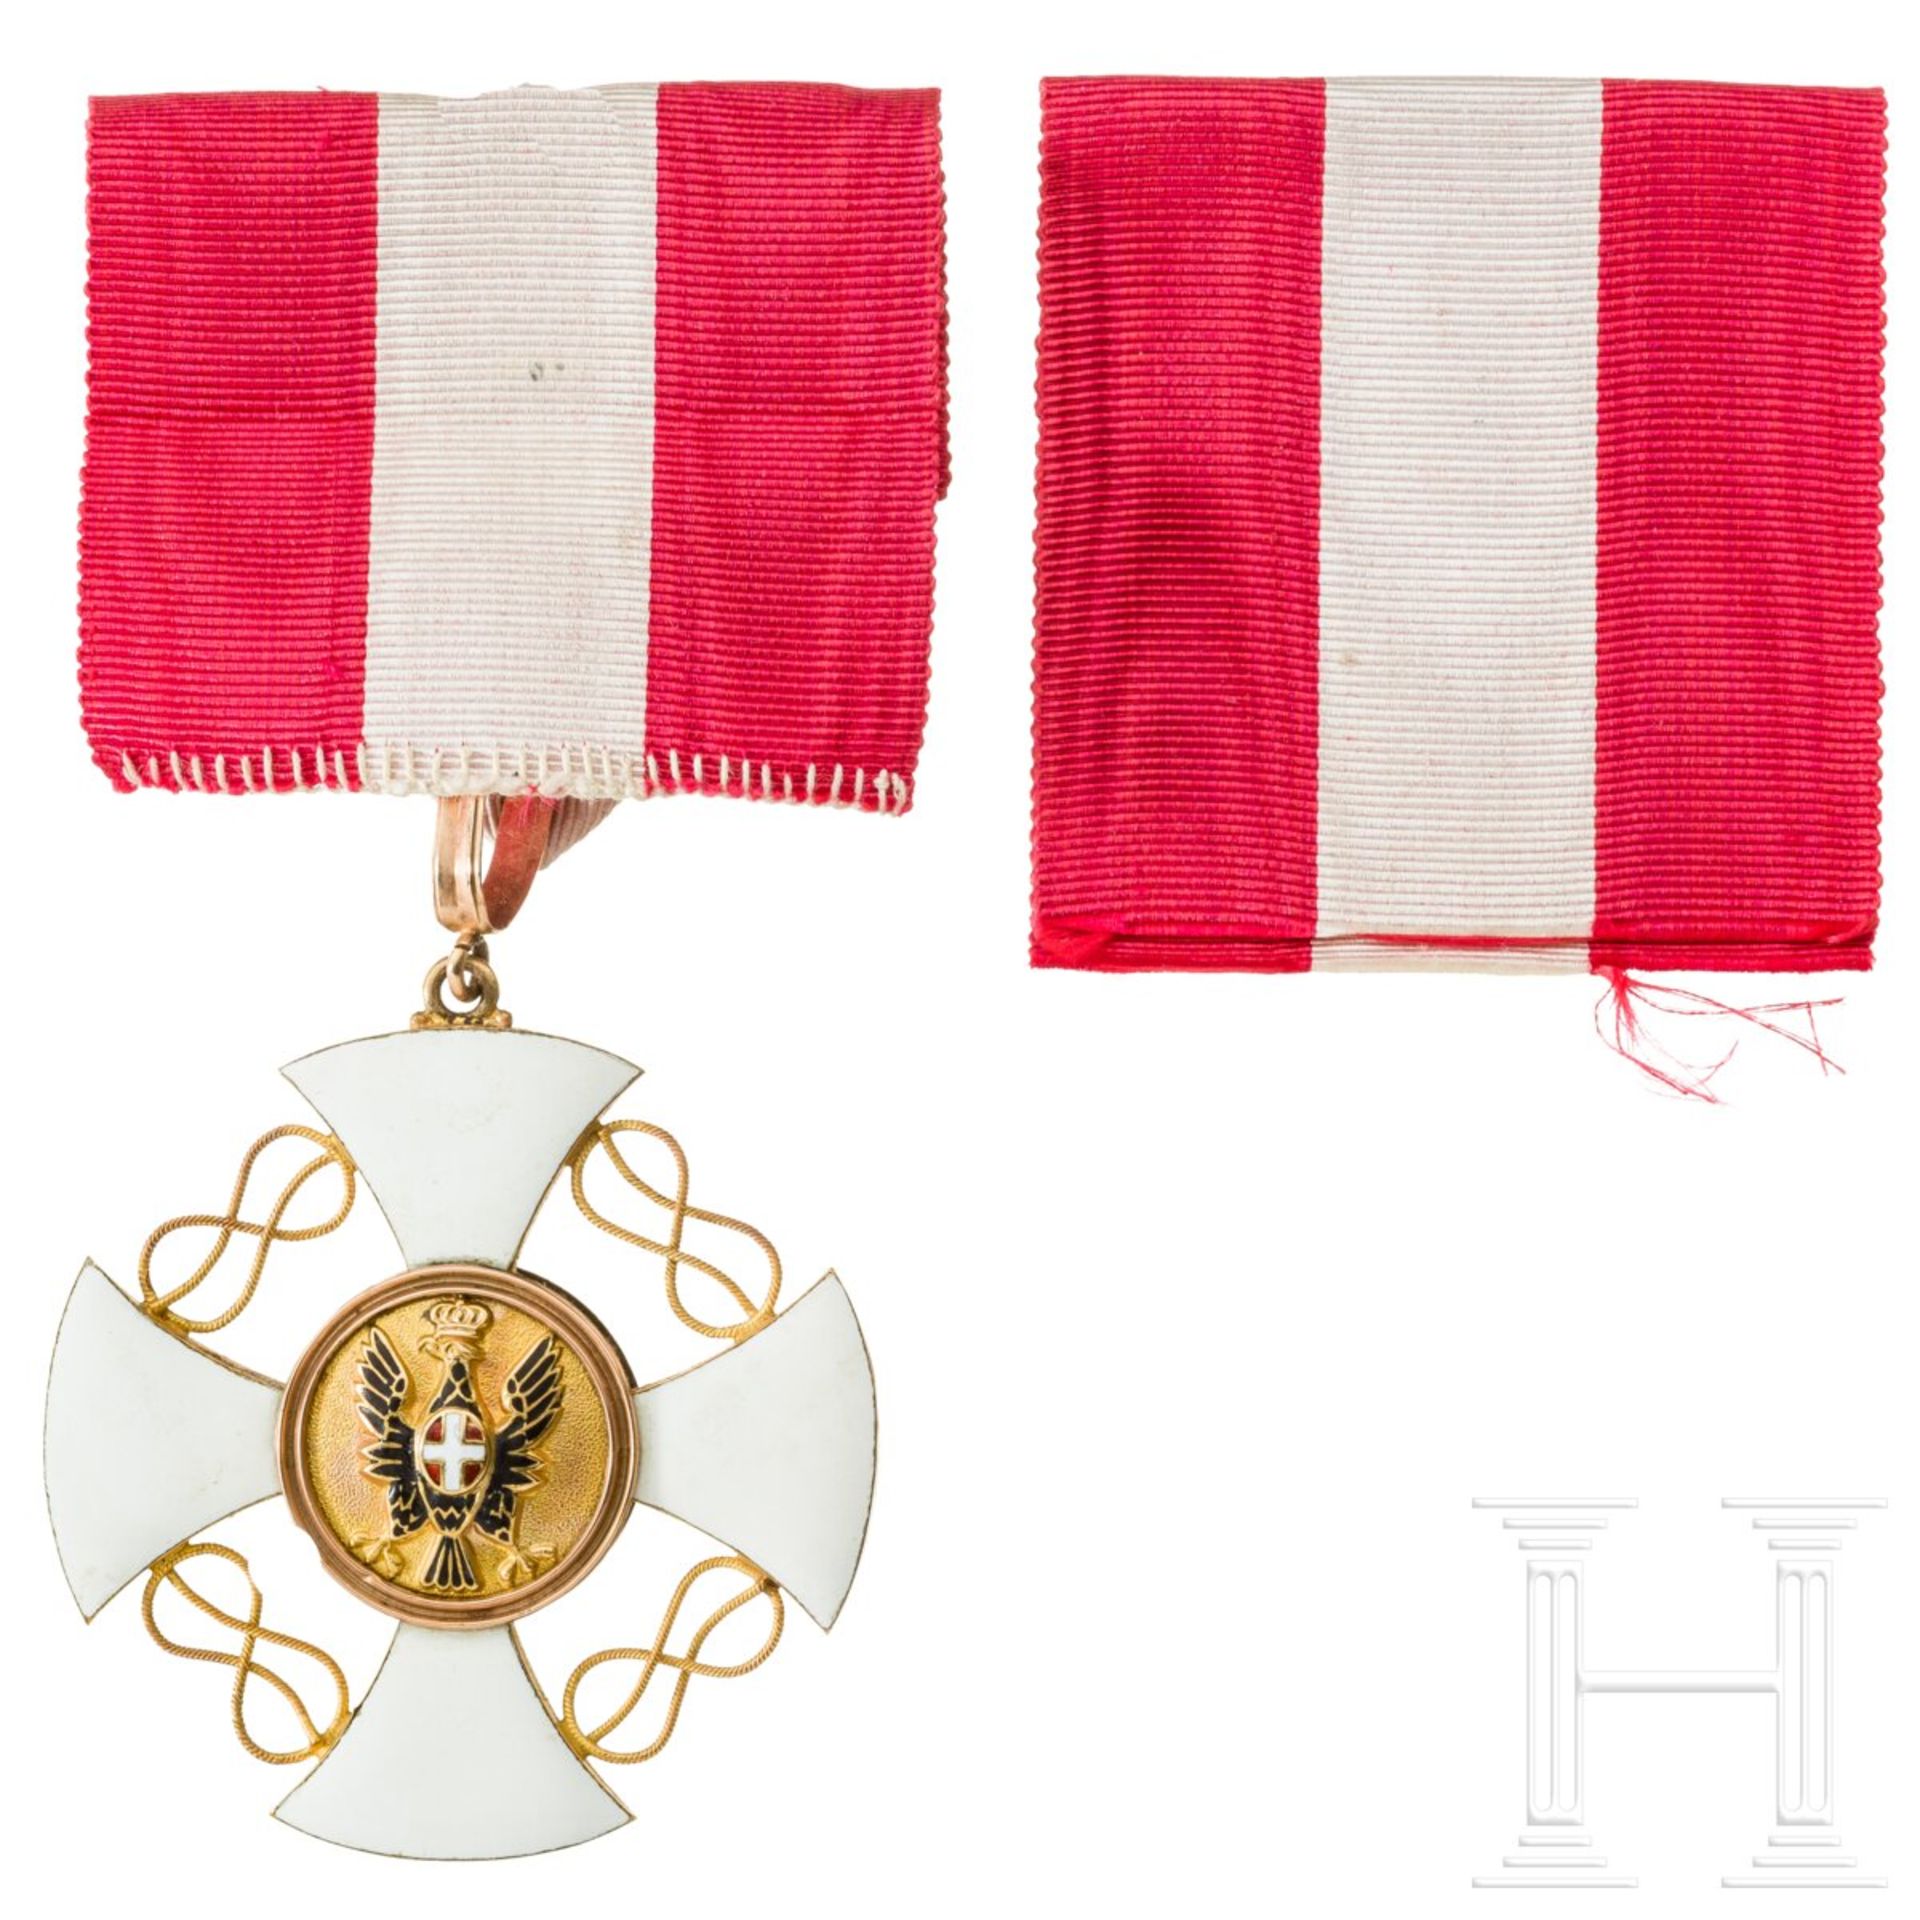 Ernst von Barth zu Harmating (1849 - 1934) - Orden der Krone von Italien und Trägerfoto, um 1900 - Bild 3 aus 7